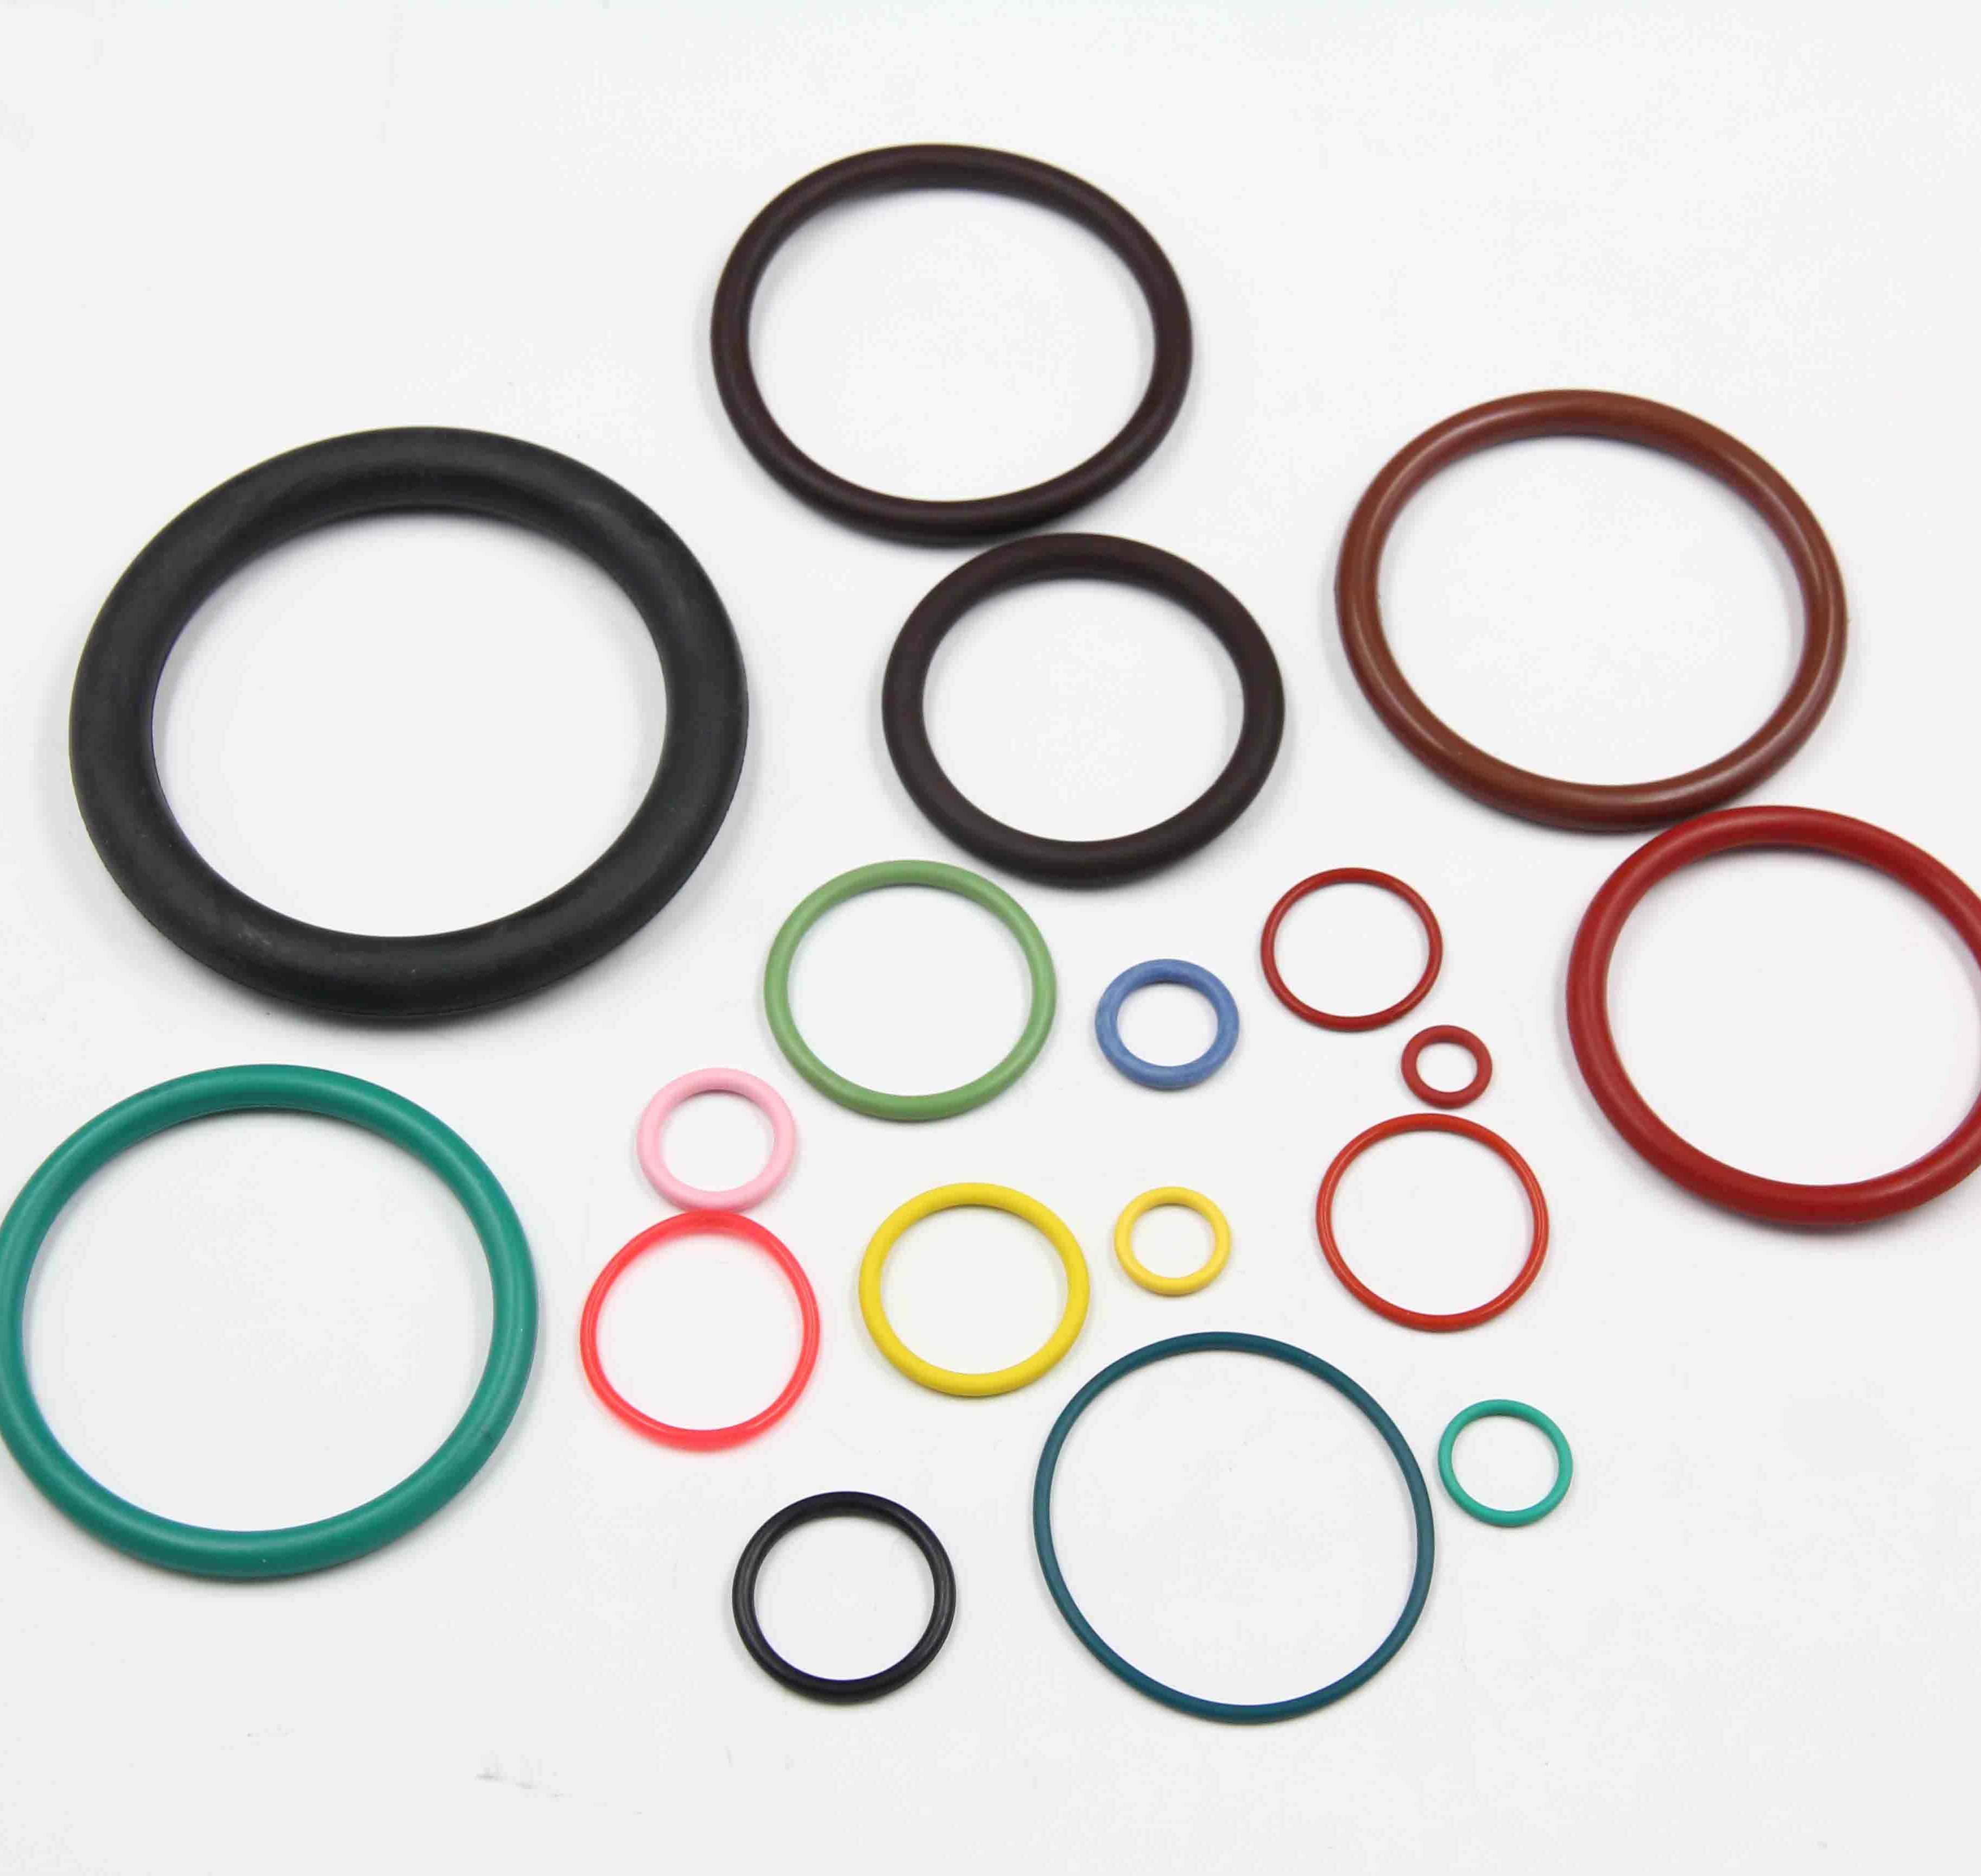 Wat zijn de randafwerkingsmethoden voor rubberen O-ringen?